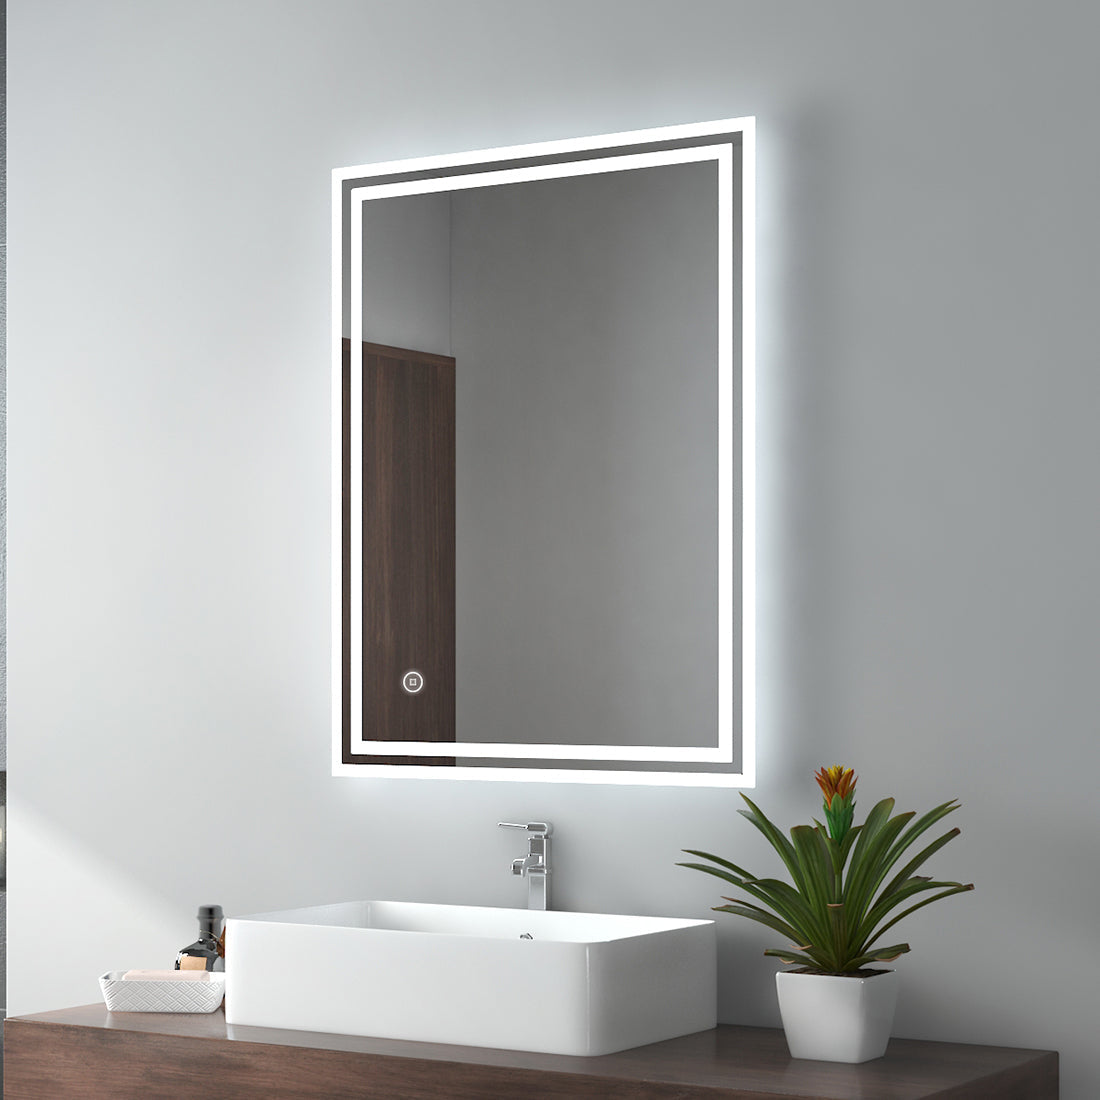 EMKE 80 x 60 cm Badspiegel mit Beleuchtung Badezimmerspiegel Wand – Touch – 3 Lichtfarben dimmbar